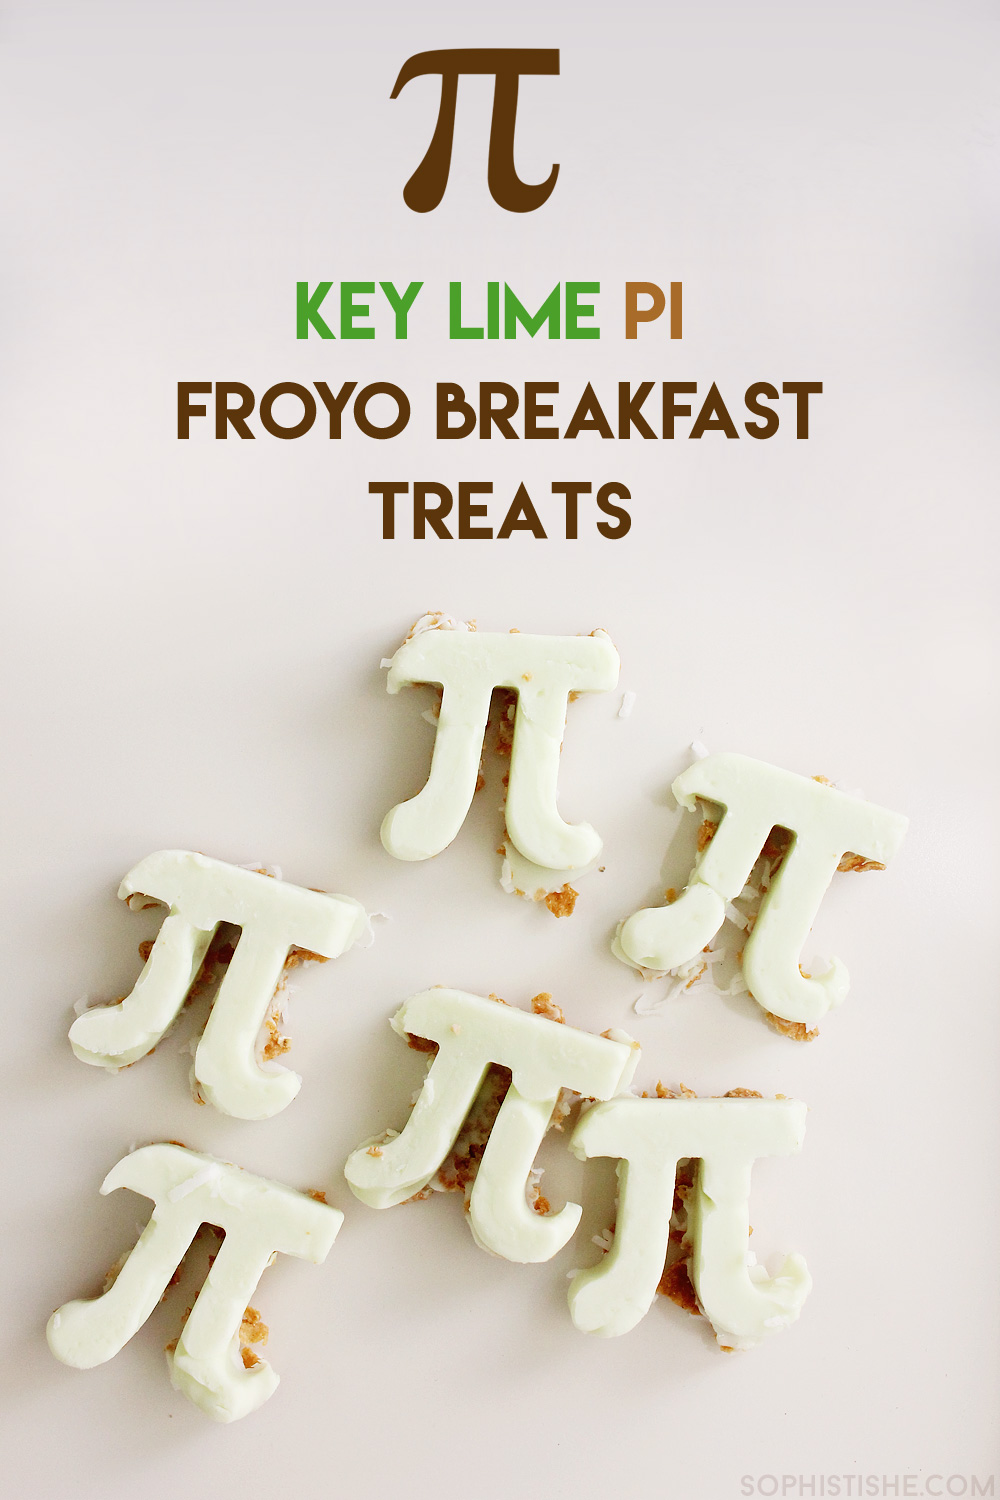 Key Lime Pi Froyo Breakfast Treats - Happy Pi Day!